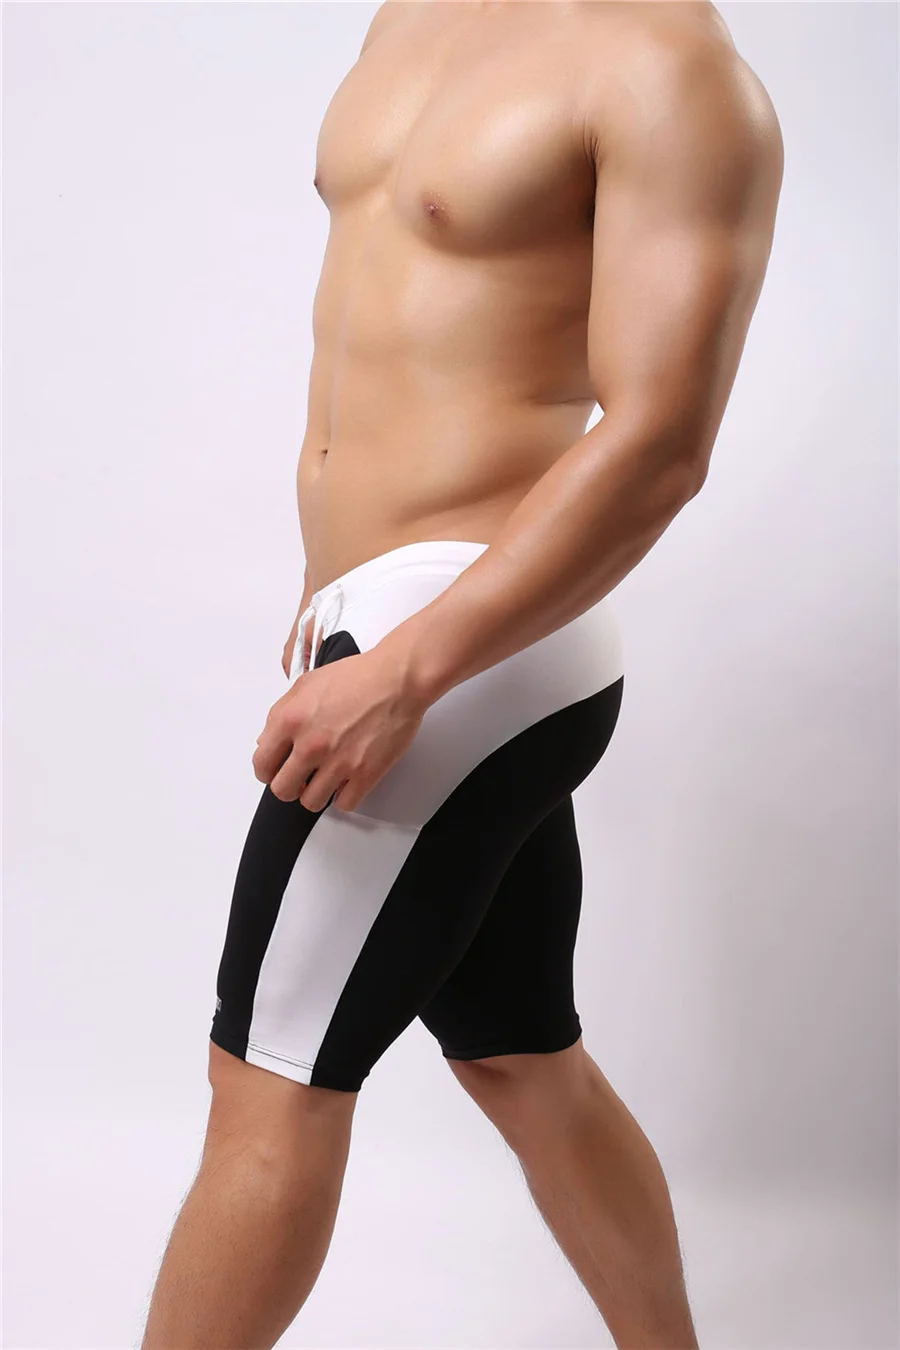 Brave person мужская пляжная одежда шорты мягкая нейлоновая ткань до колена мужские велосипедные шорты мужские пляжные шорты